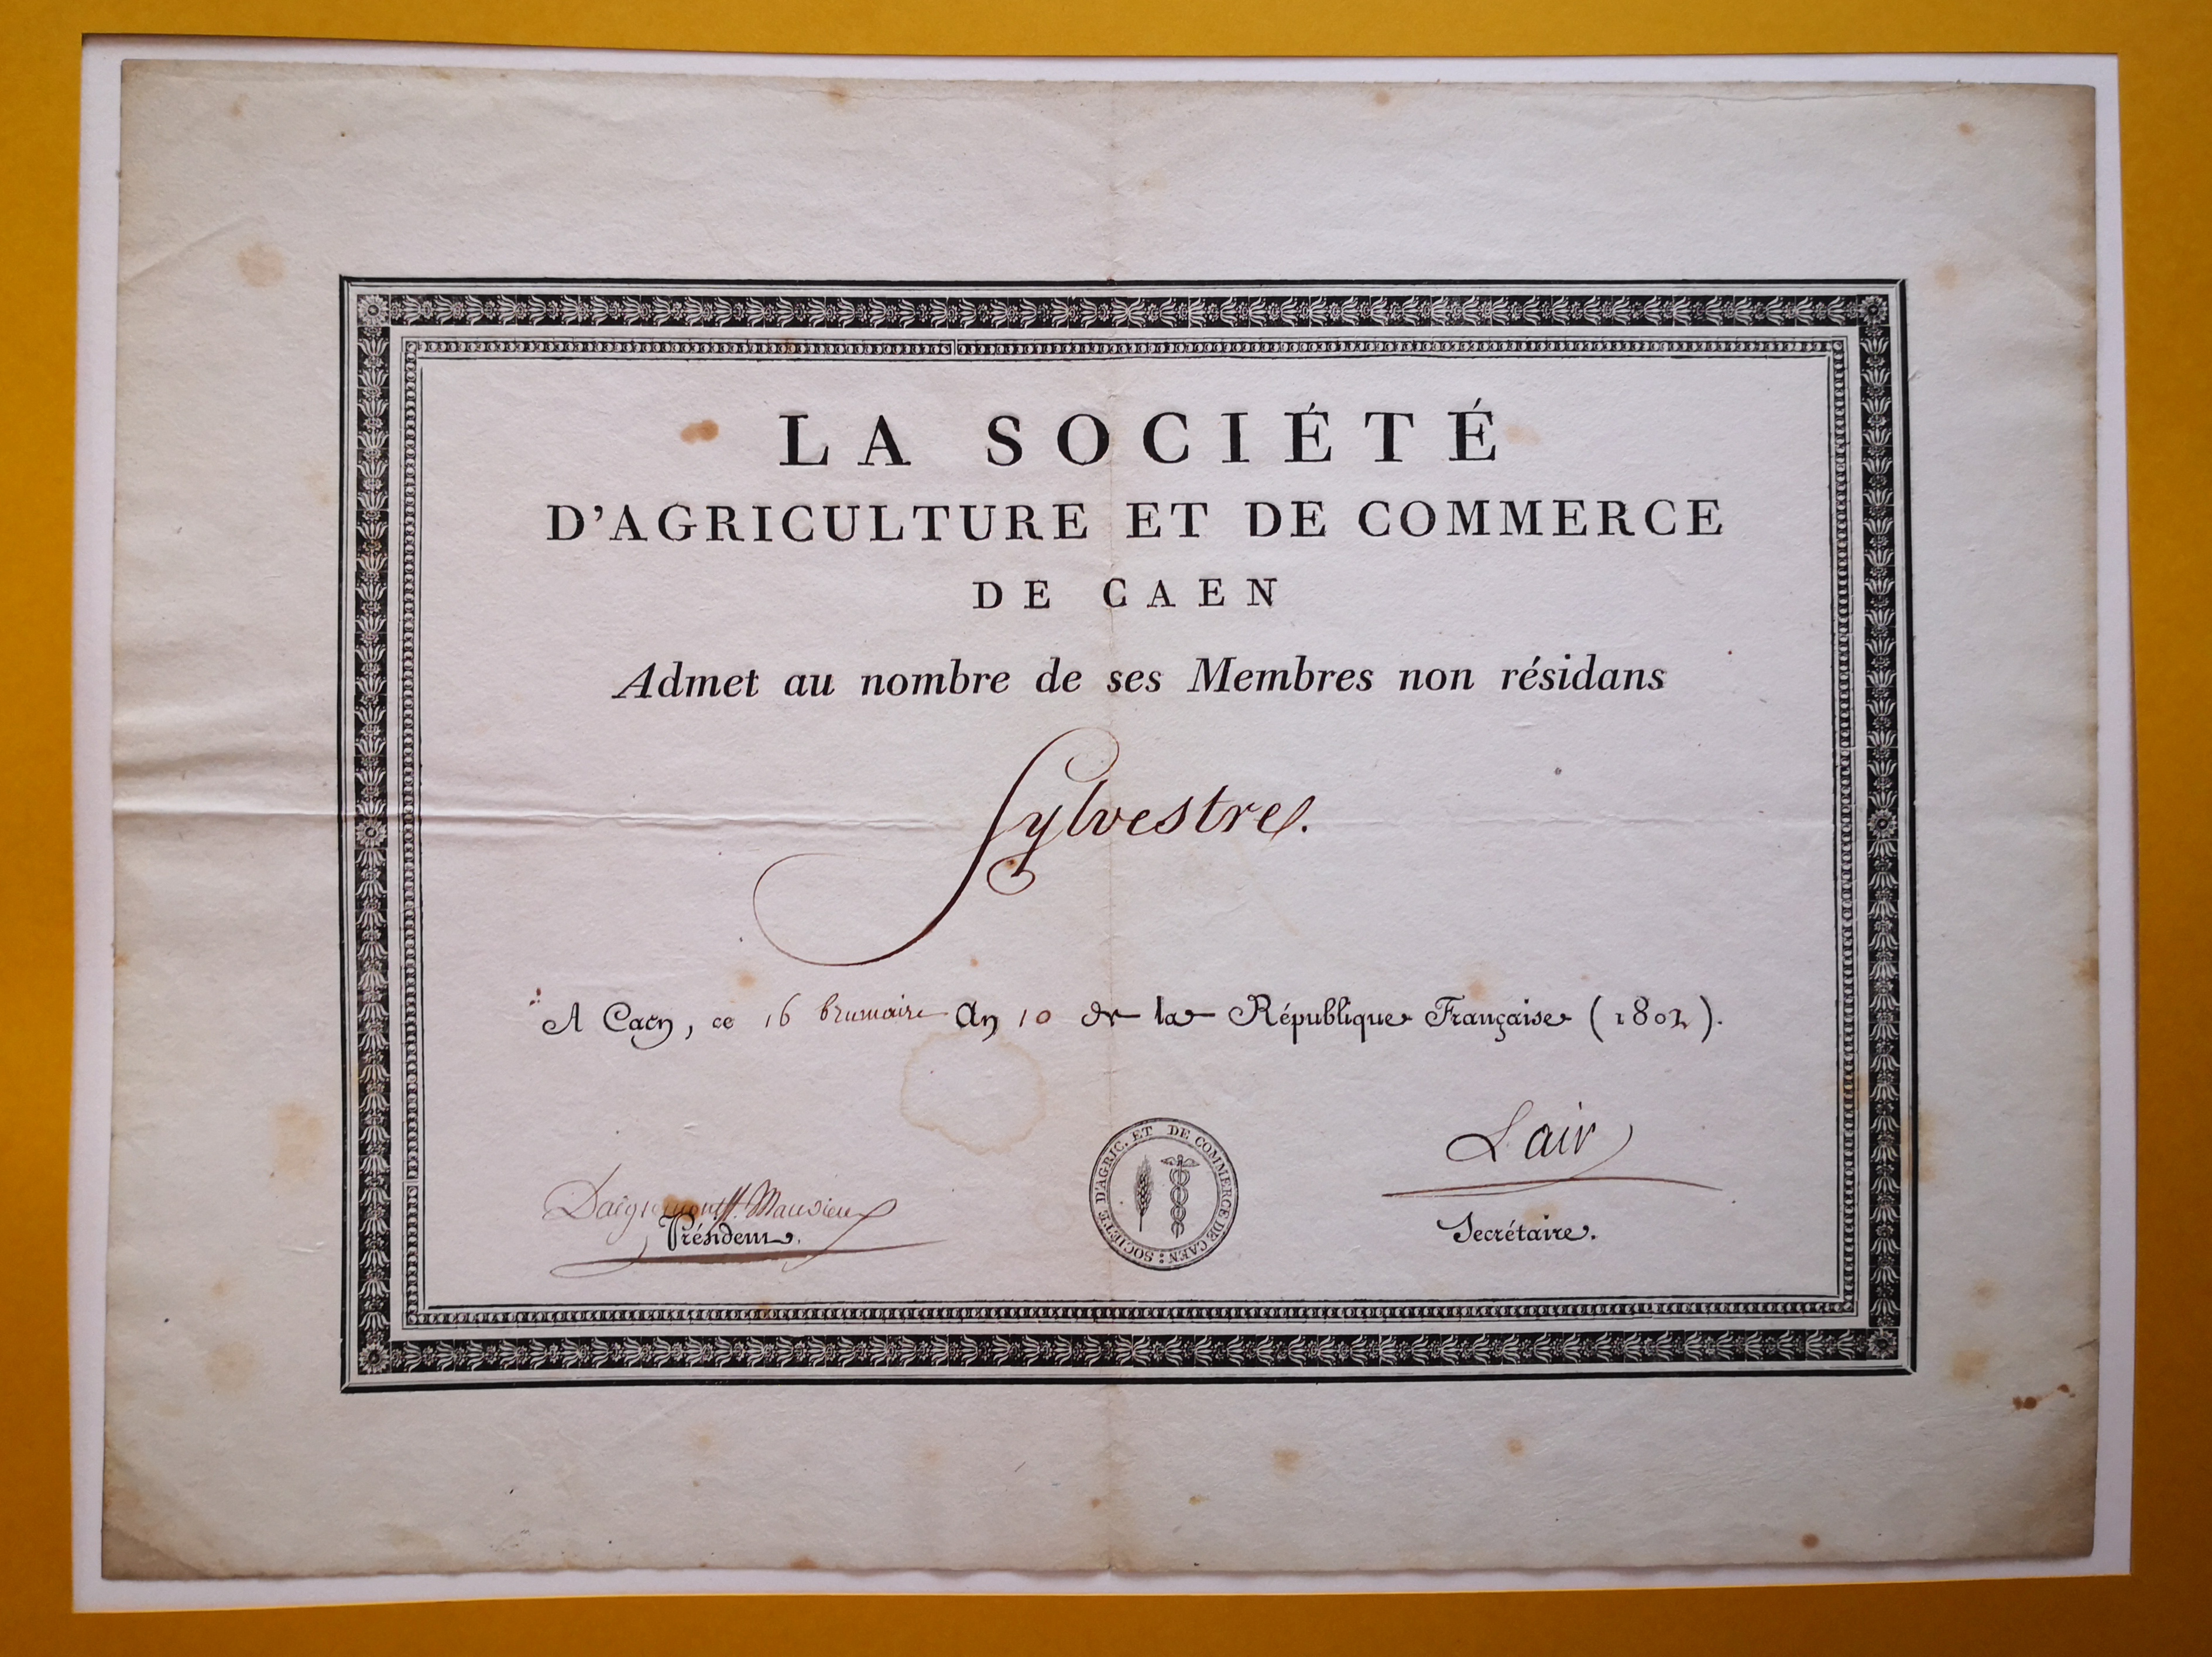  Diplôme de membre de la Société d'Agriculture et de Commerce de Caen décerné à Augustin-François de Silvestre - Document 1